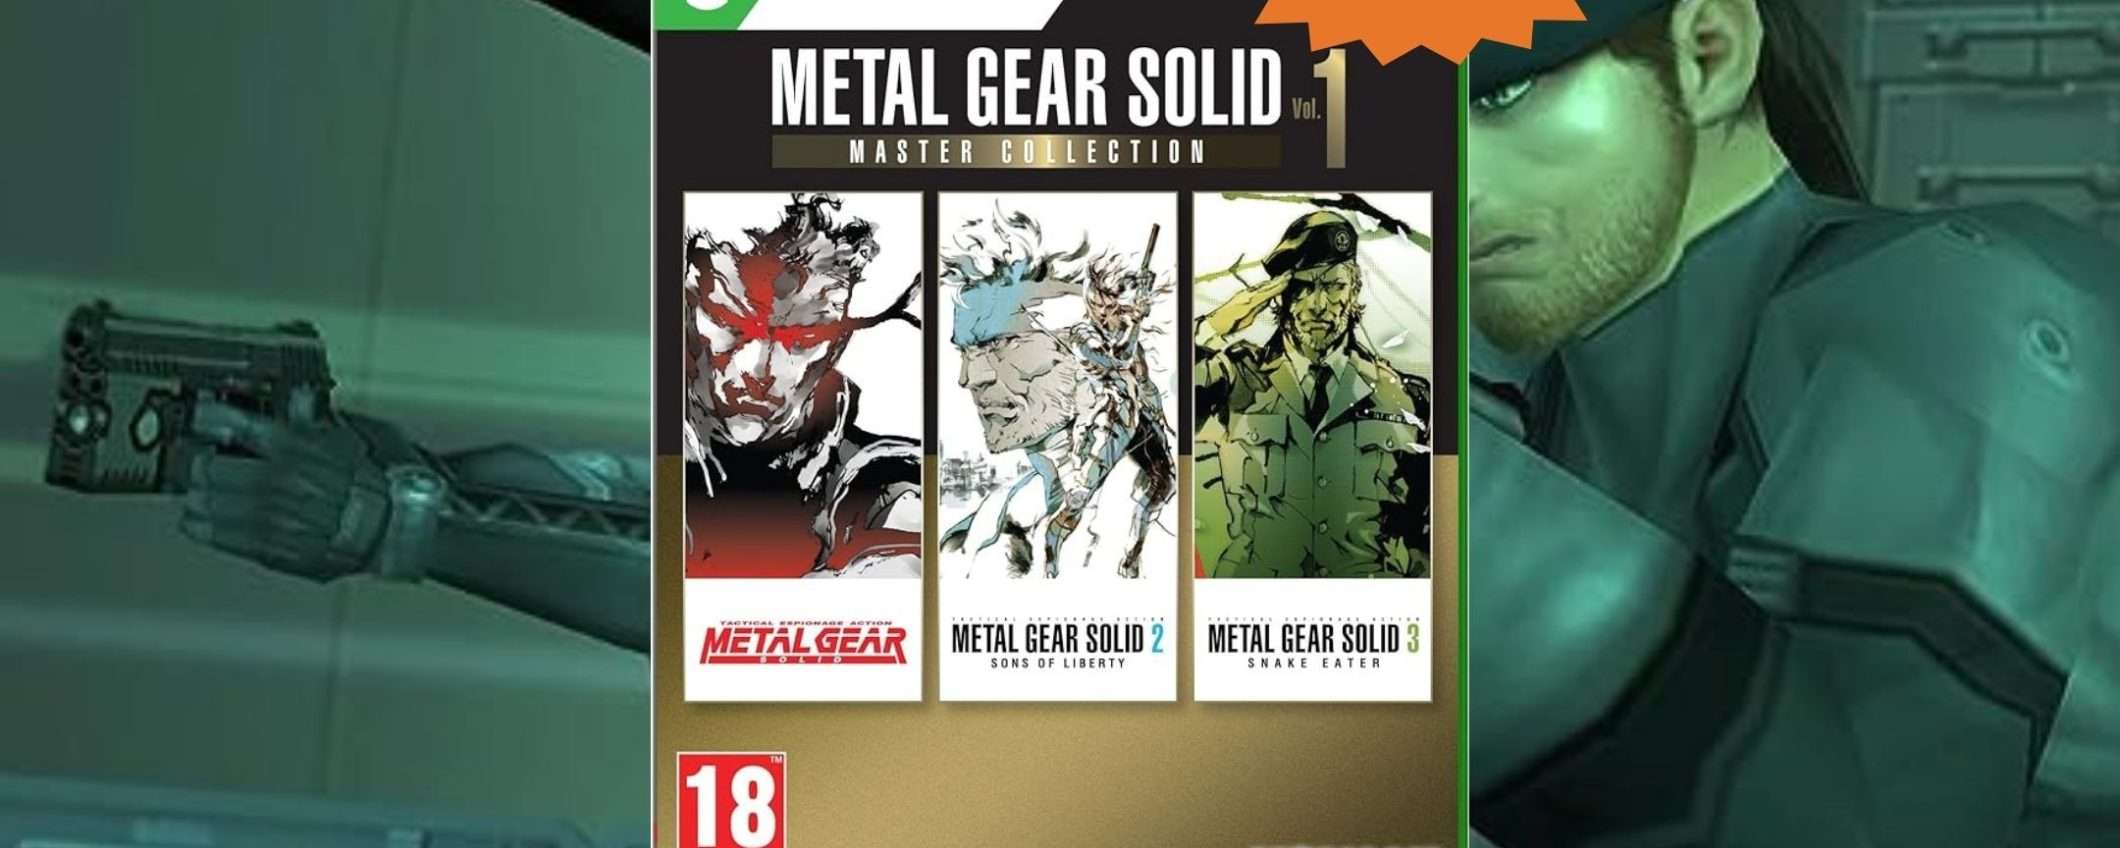 Metal Gear Solid: Master Collection in MEGA sconto su Amazon